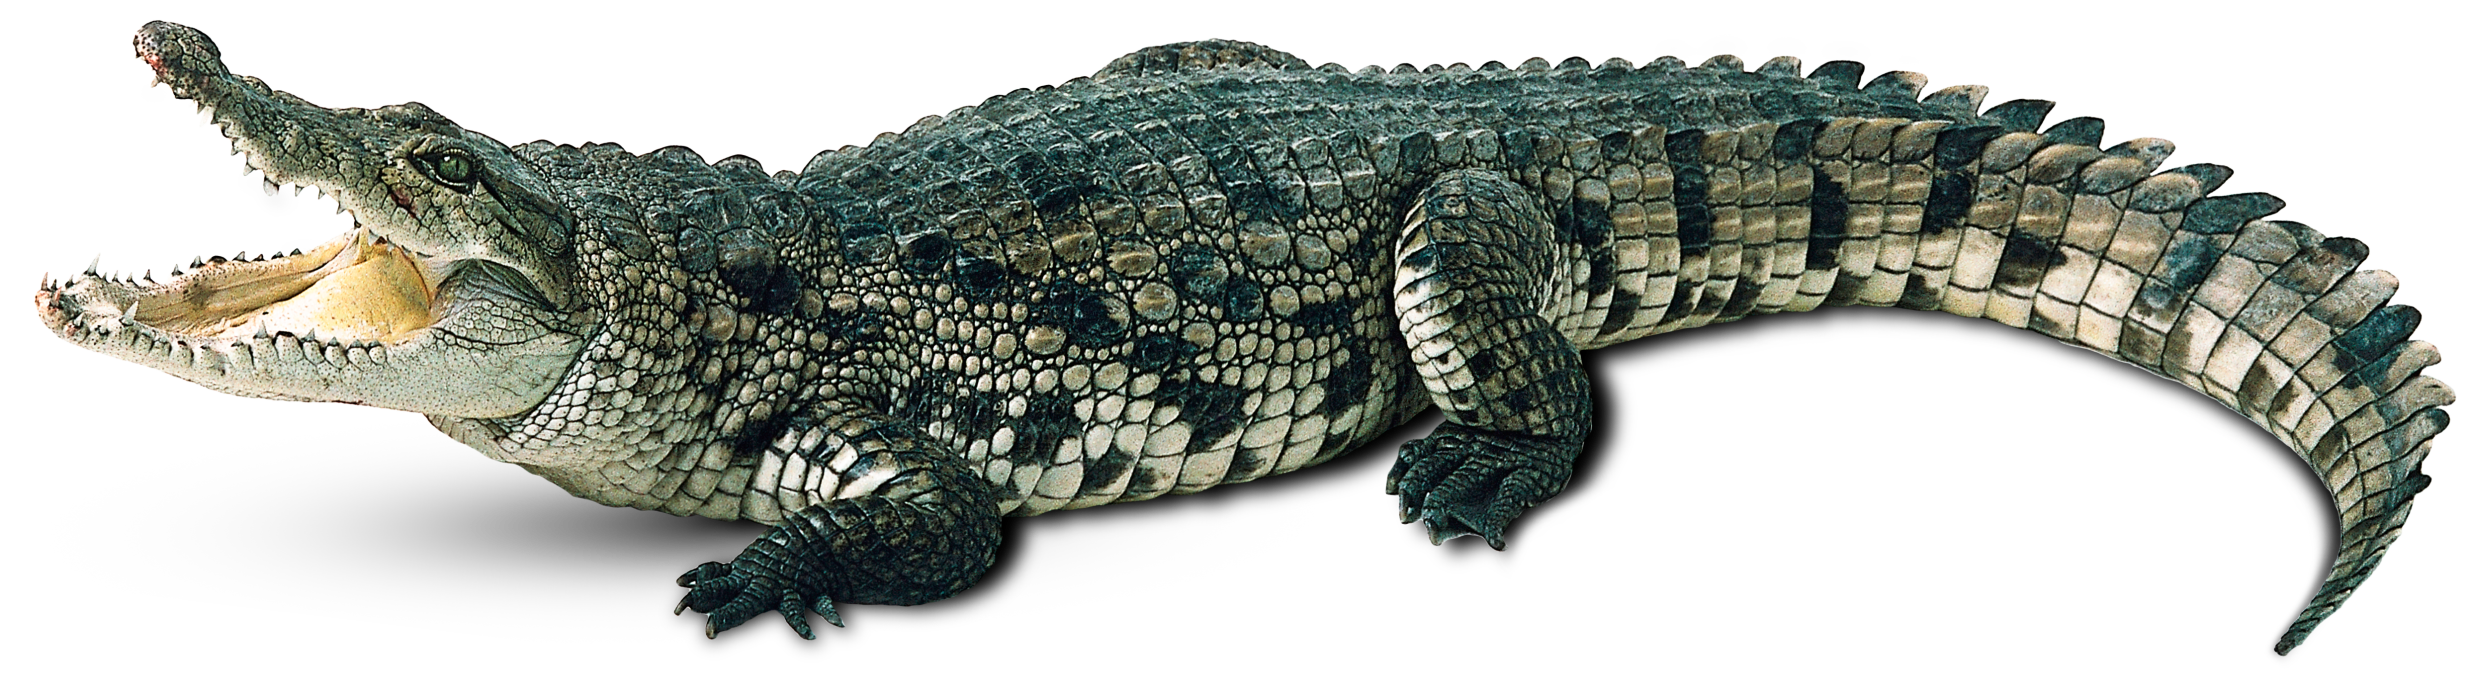 Real Alligator PNG Transparent Image